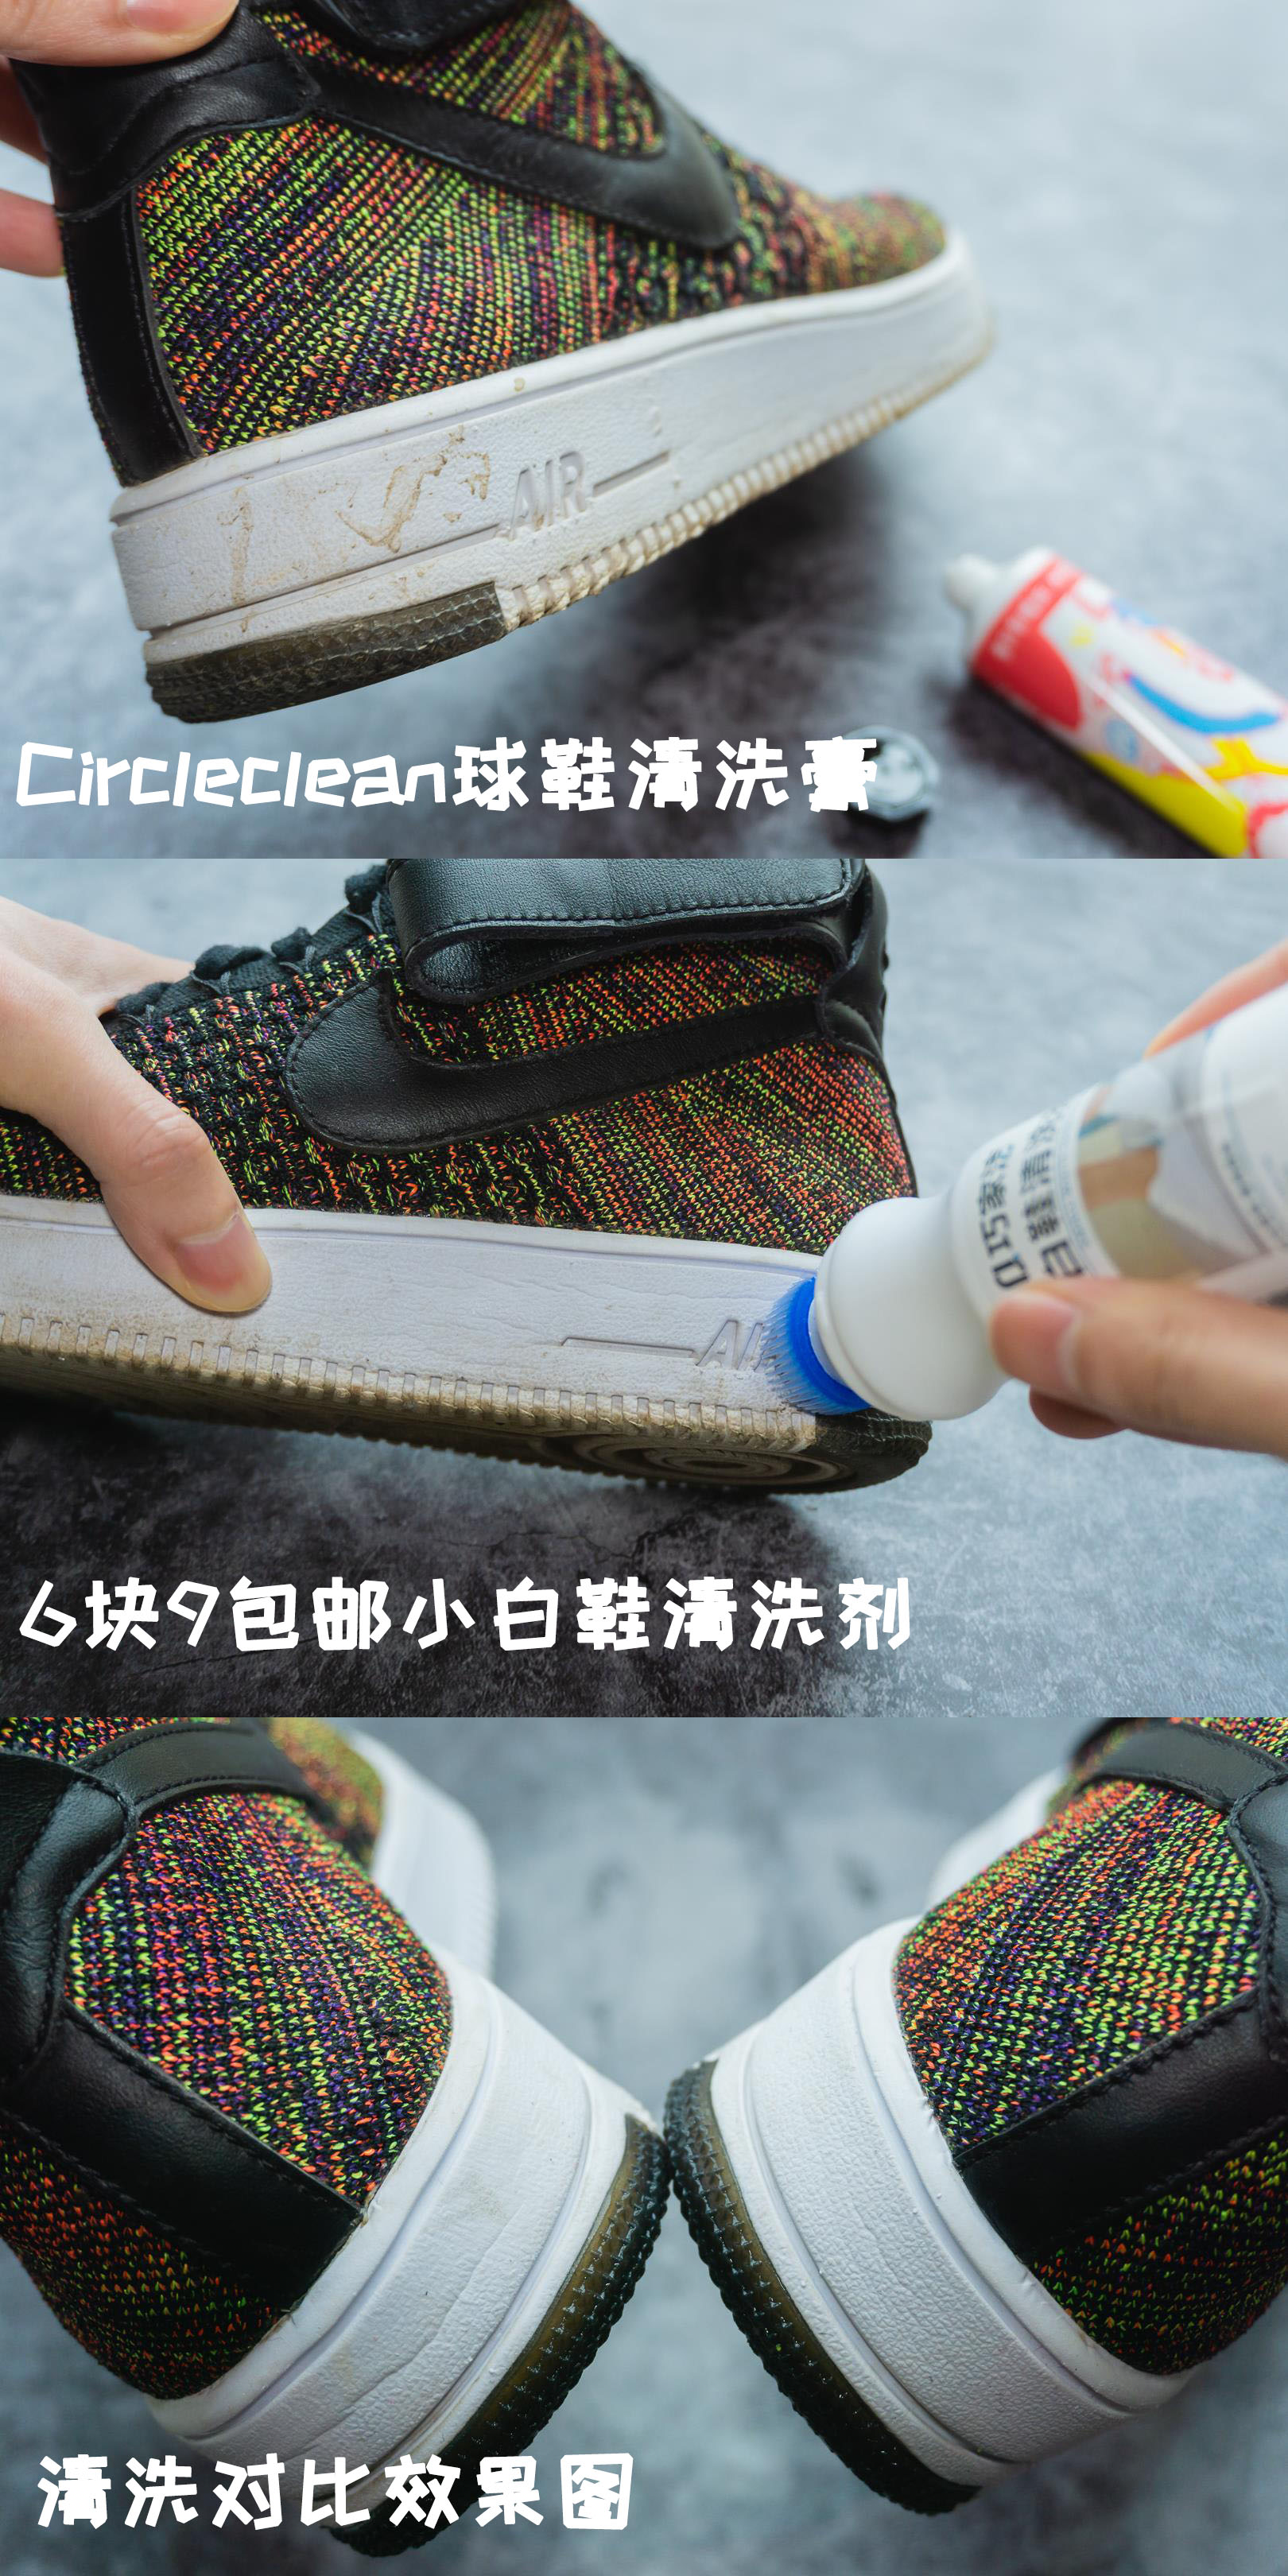 Circleclean球鞋清洗膏 VS 6块9包邮清洗剂